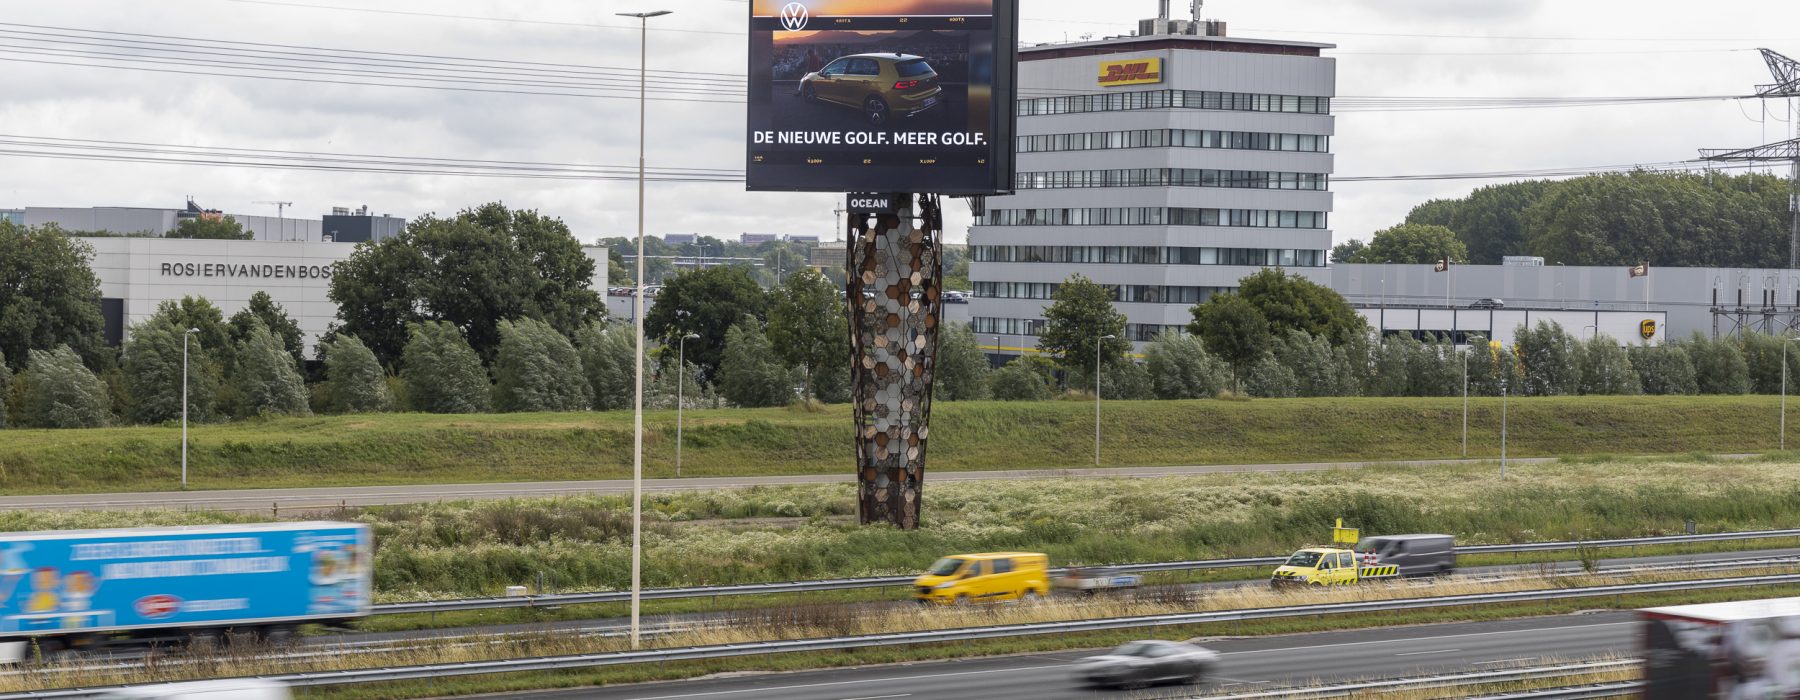 Snelwegreclame van Volkswagen op de mast Utrecht The Wall